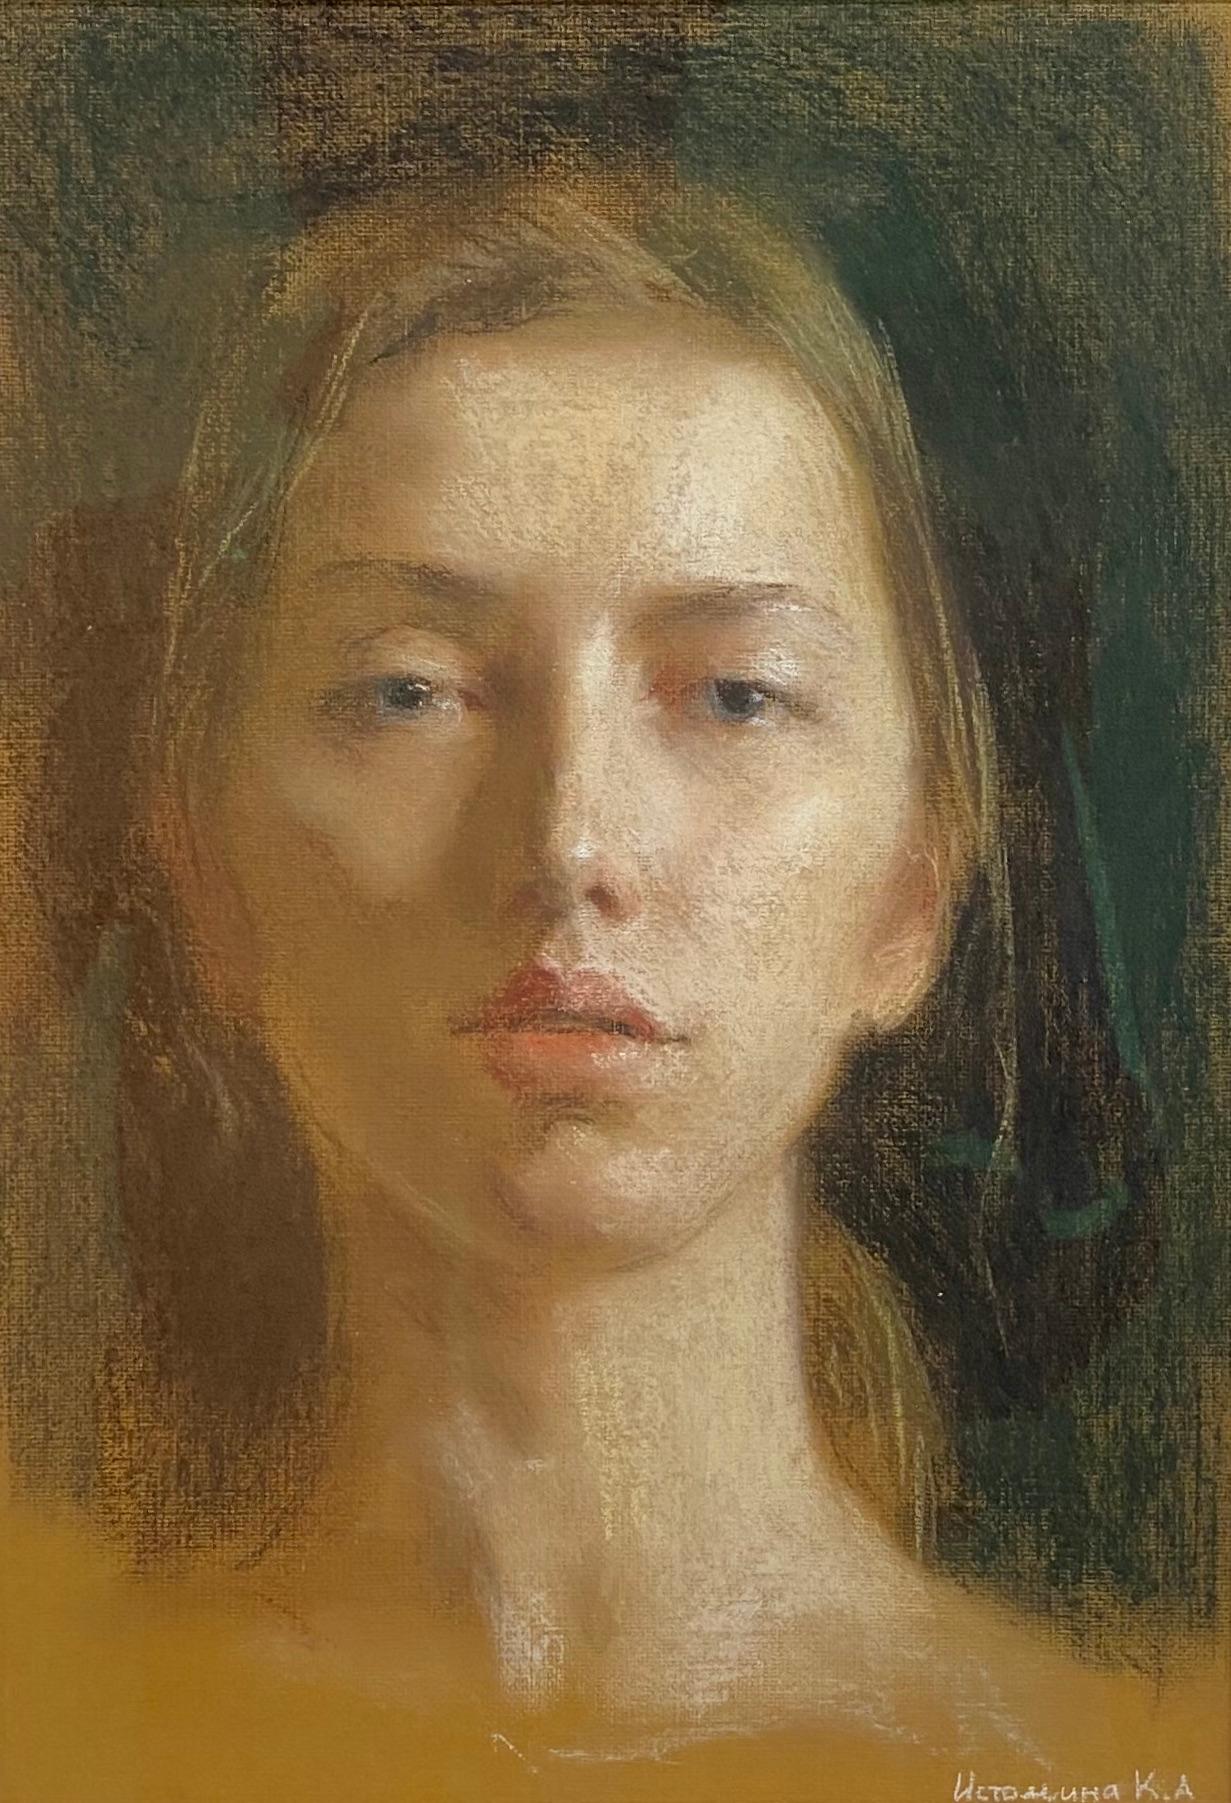 Self-Portrait In Pastels - Dessins contemporains russes du 21e siècle